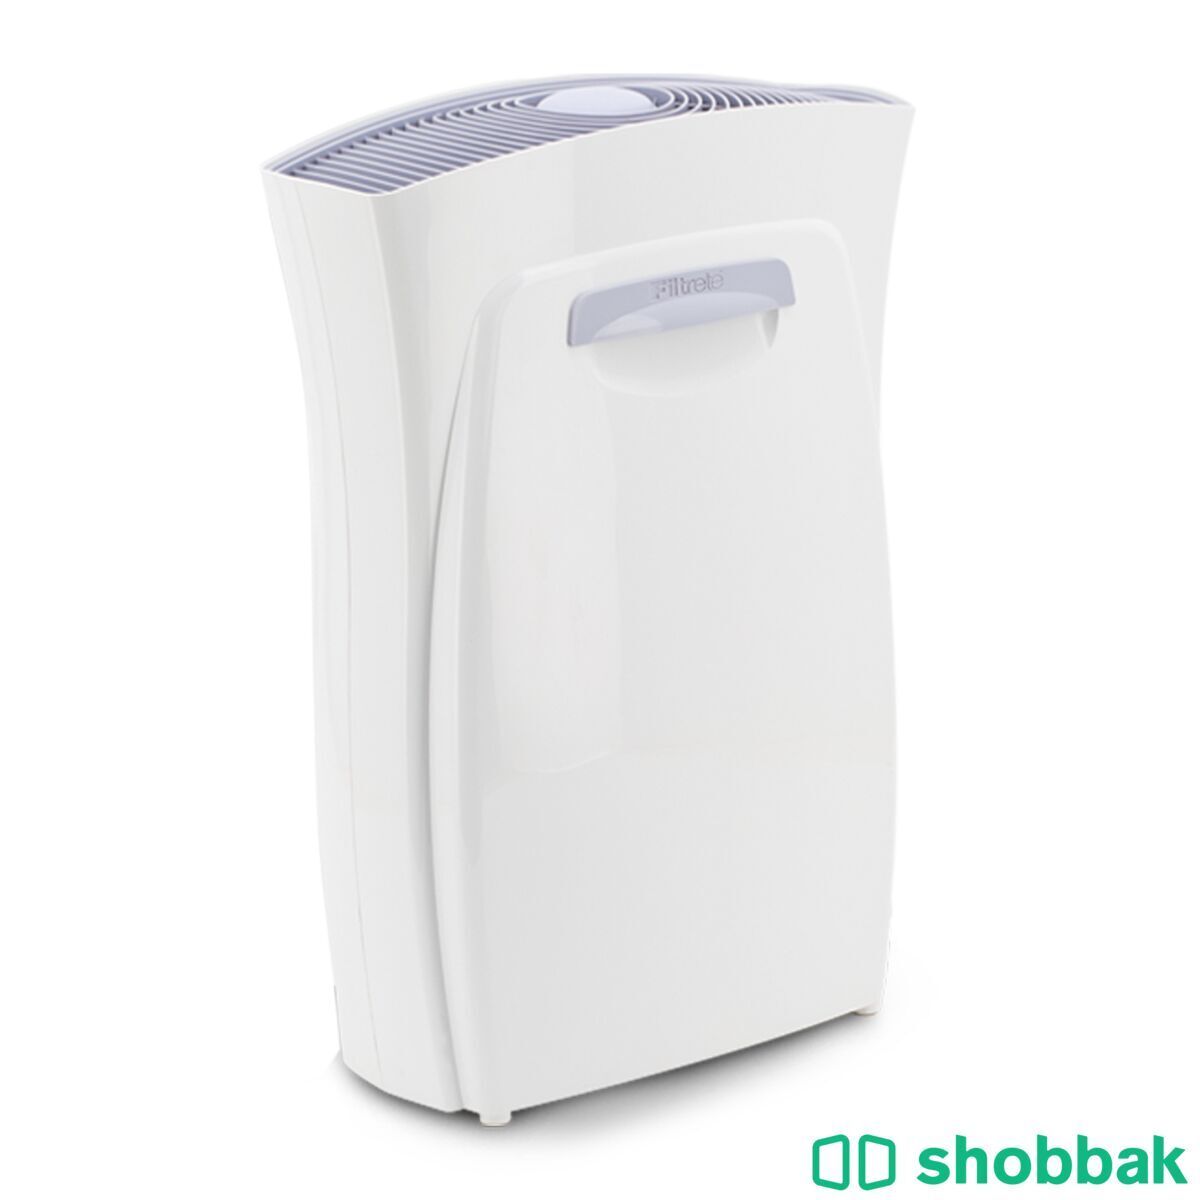  جهاز منقي هواء من شركة Filtrete Shobbak Saudi Arabia